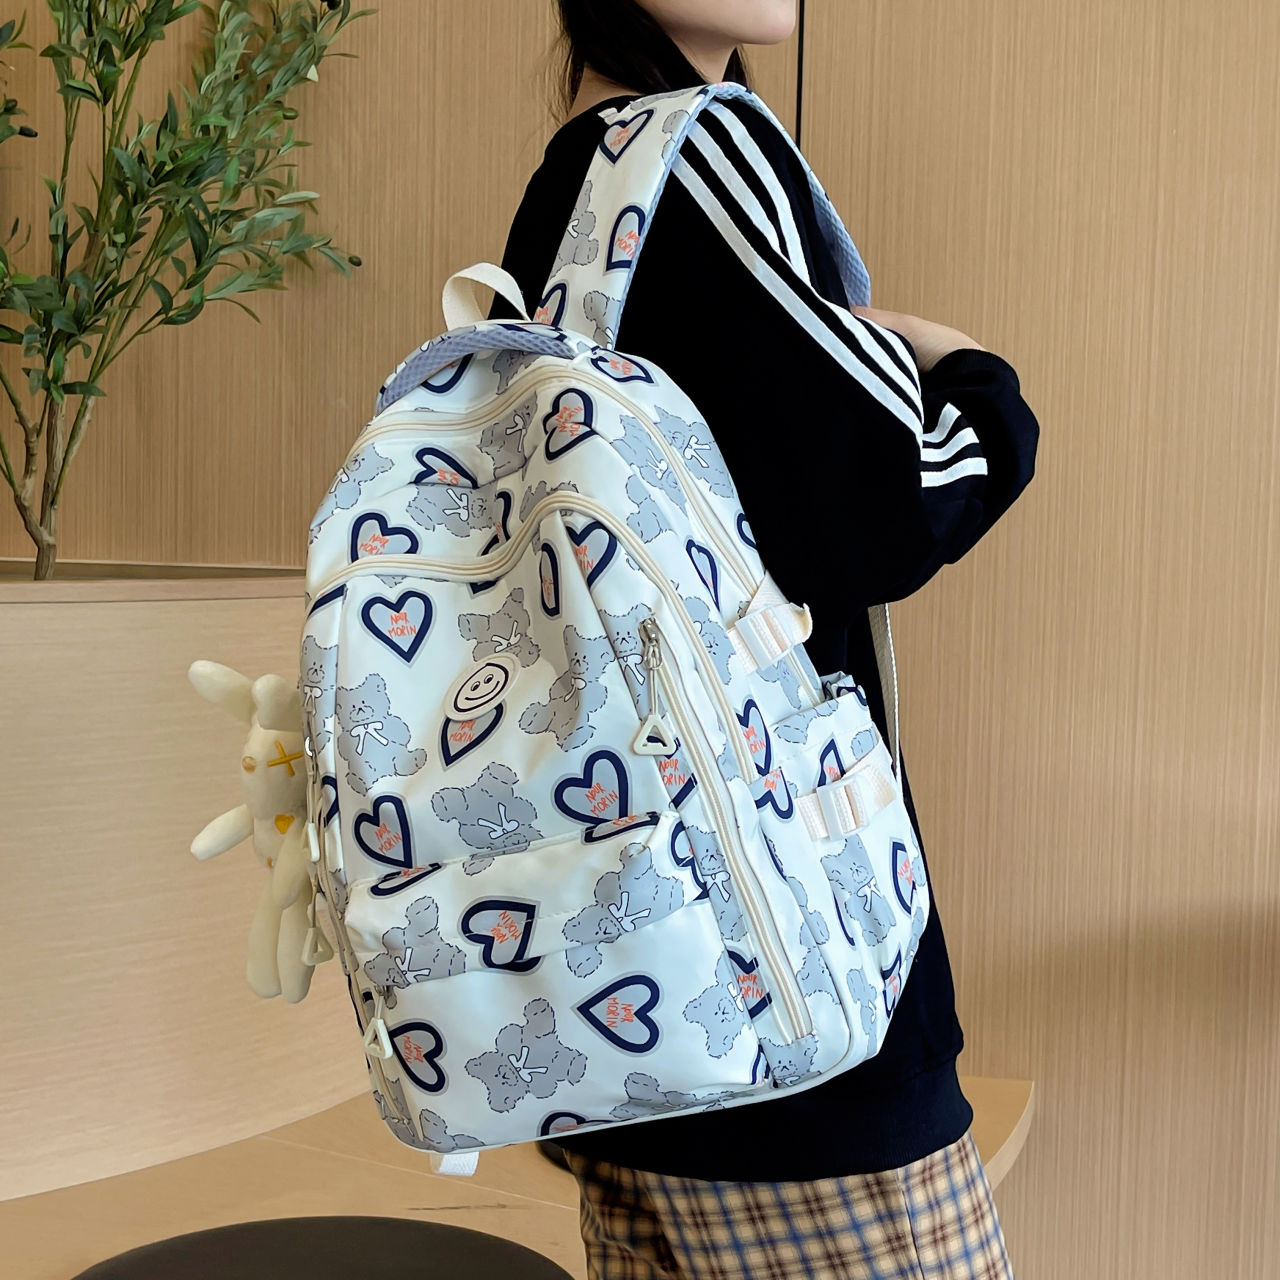 Girls' schoolbags, junior high school students' versatile primary school students' backpacks, cute new student backpacks, large capacity backpacks